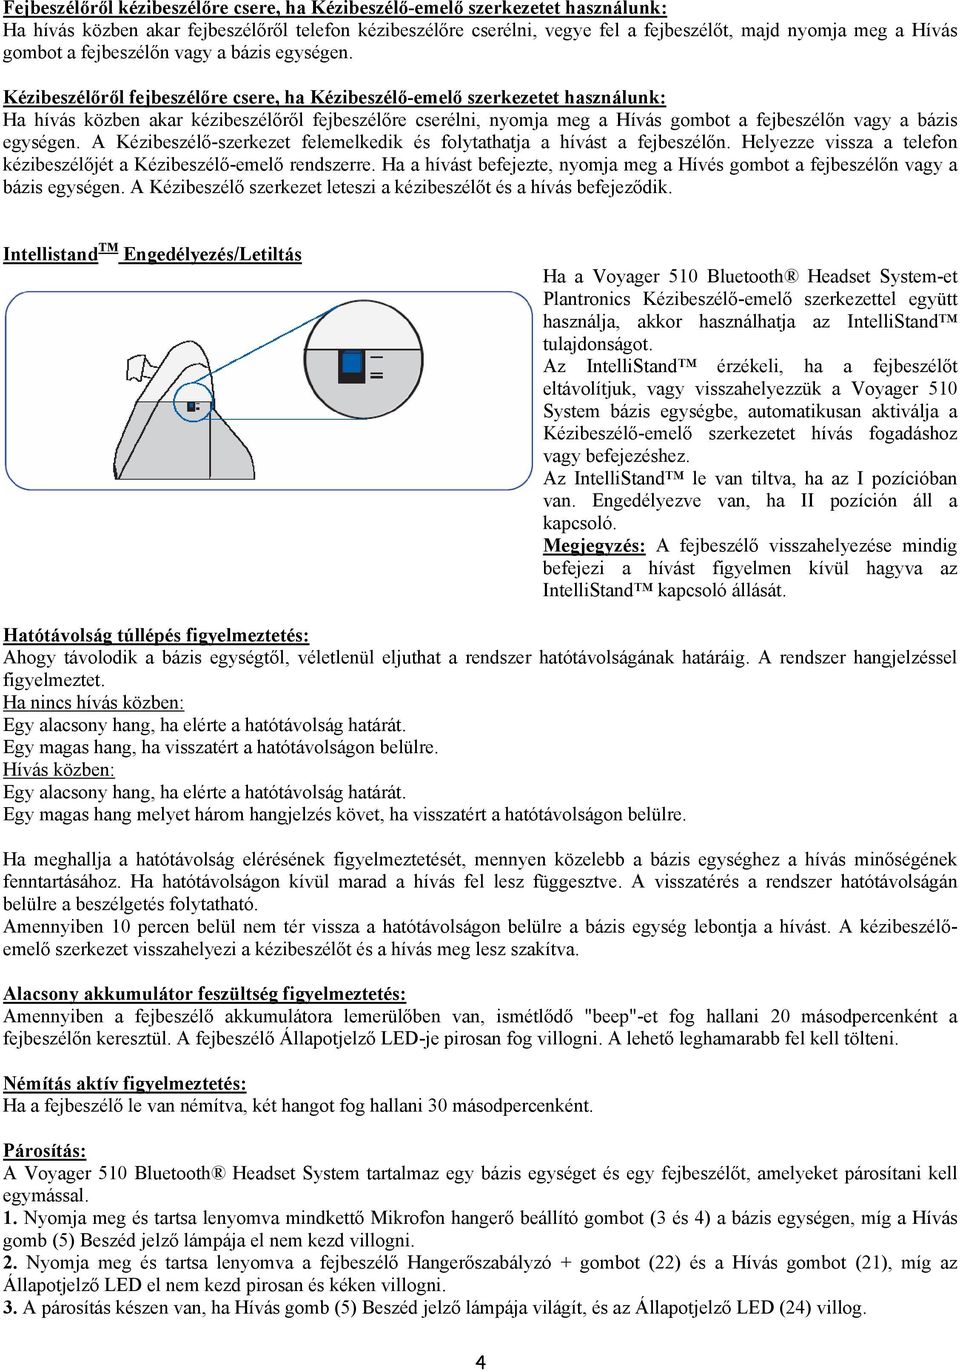 Kezelési útmutató PLANTRONICS VOYAGER 510 BLUETOOTH HEADSET SYSTEM.  Quantum-R Kft. Importőr: - PDF Ingyenes letöltés